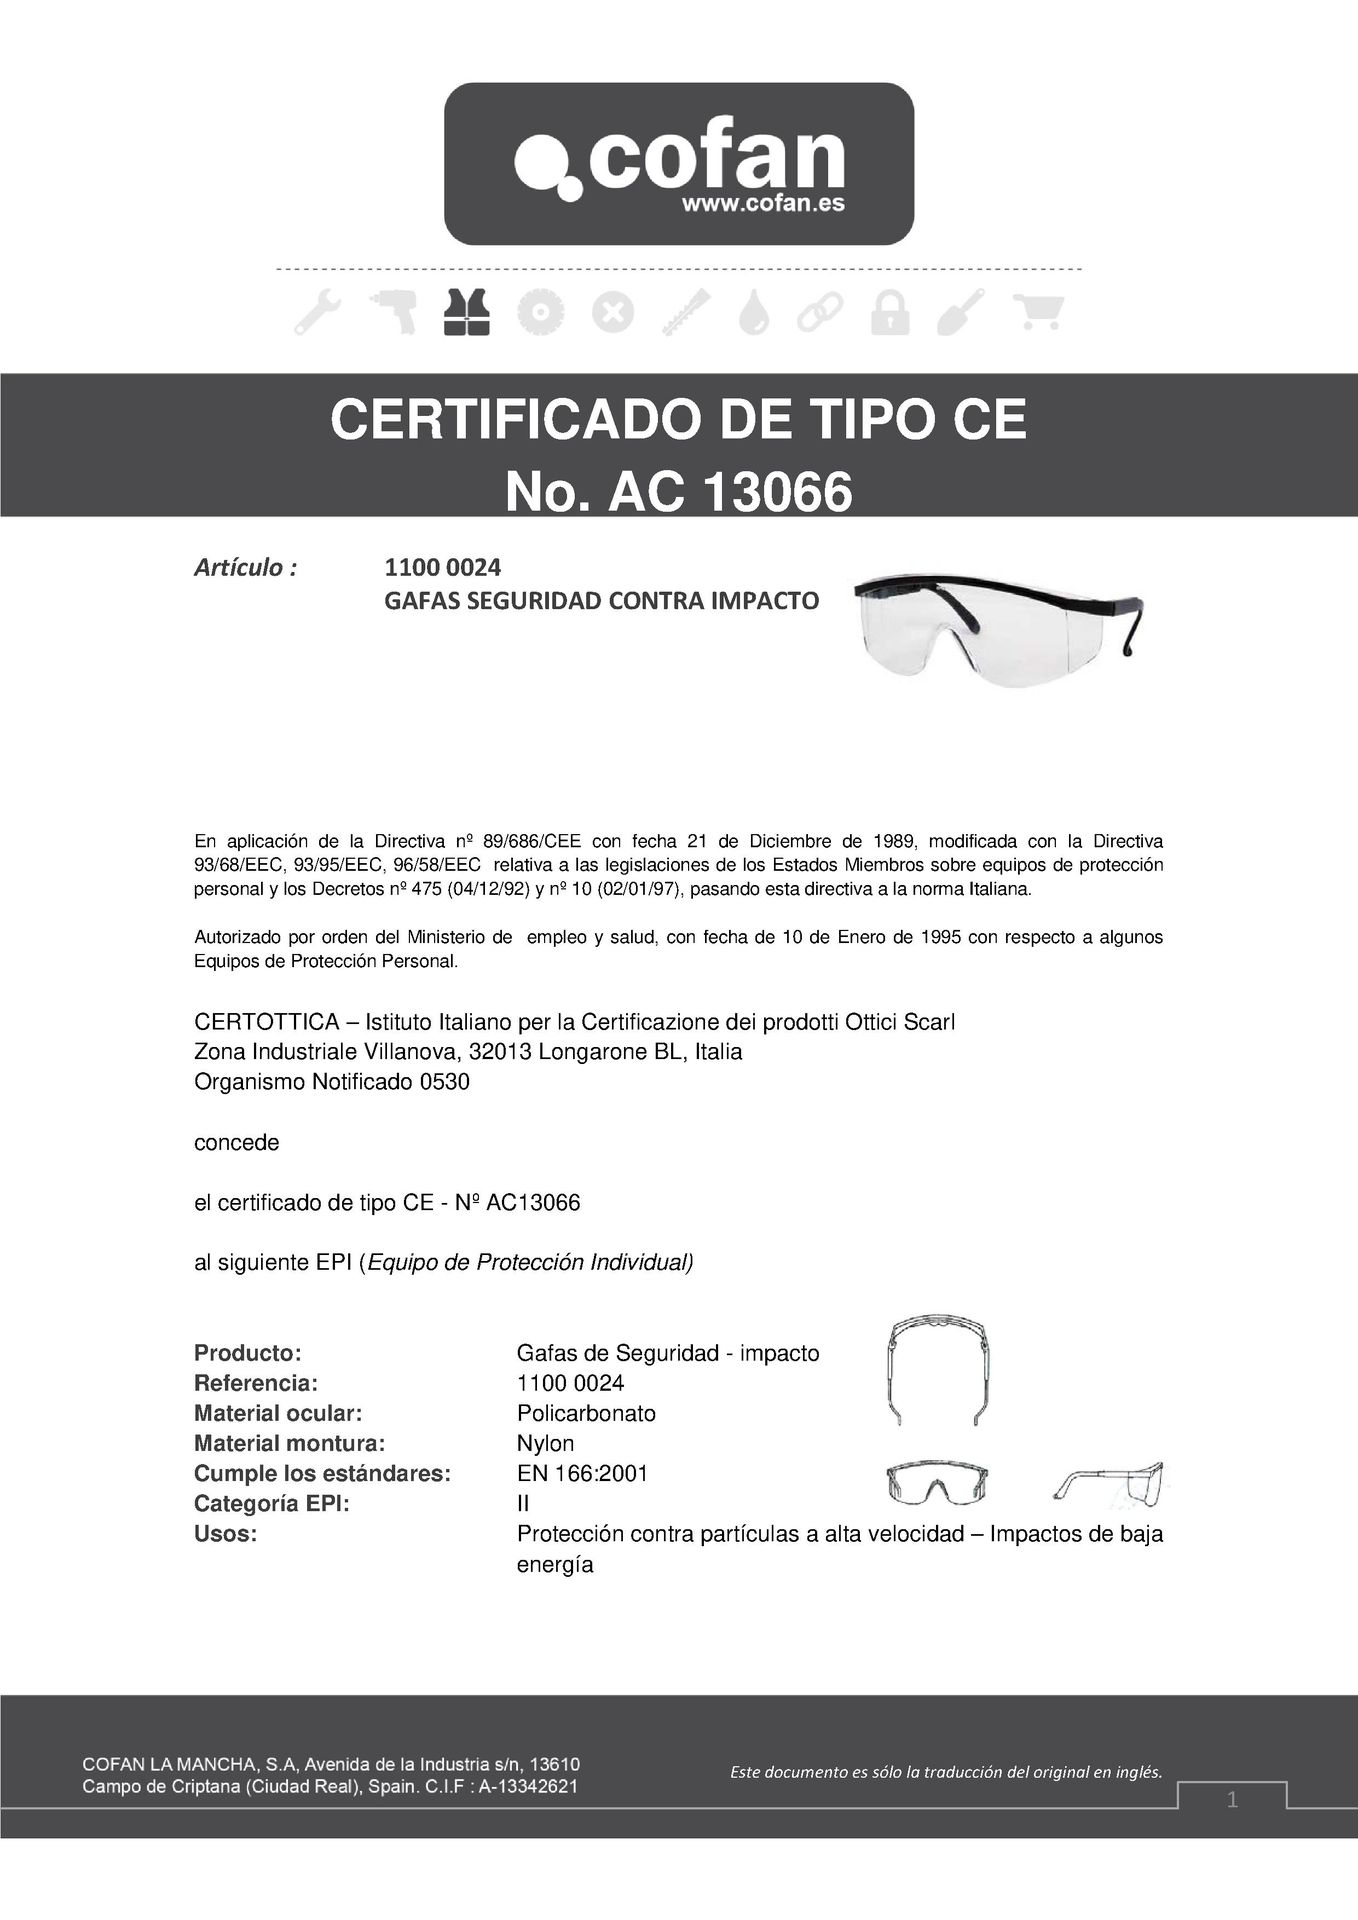 Certificado de Gafas de Seguridad Contra Impactos Ref. 11000024